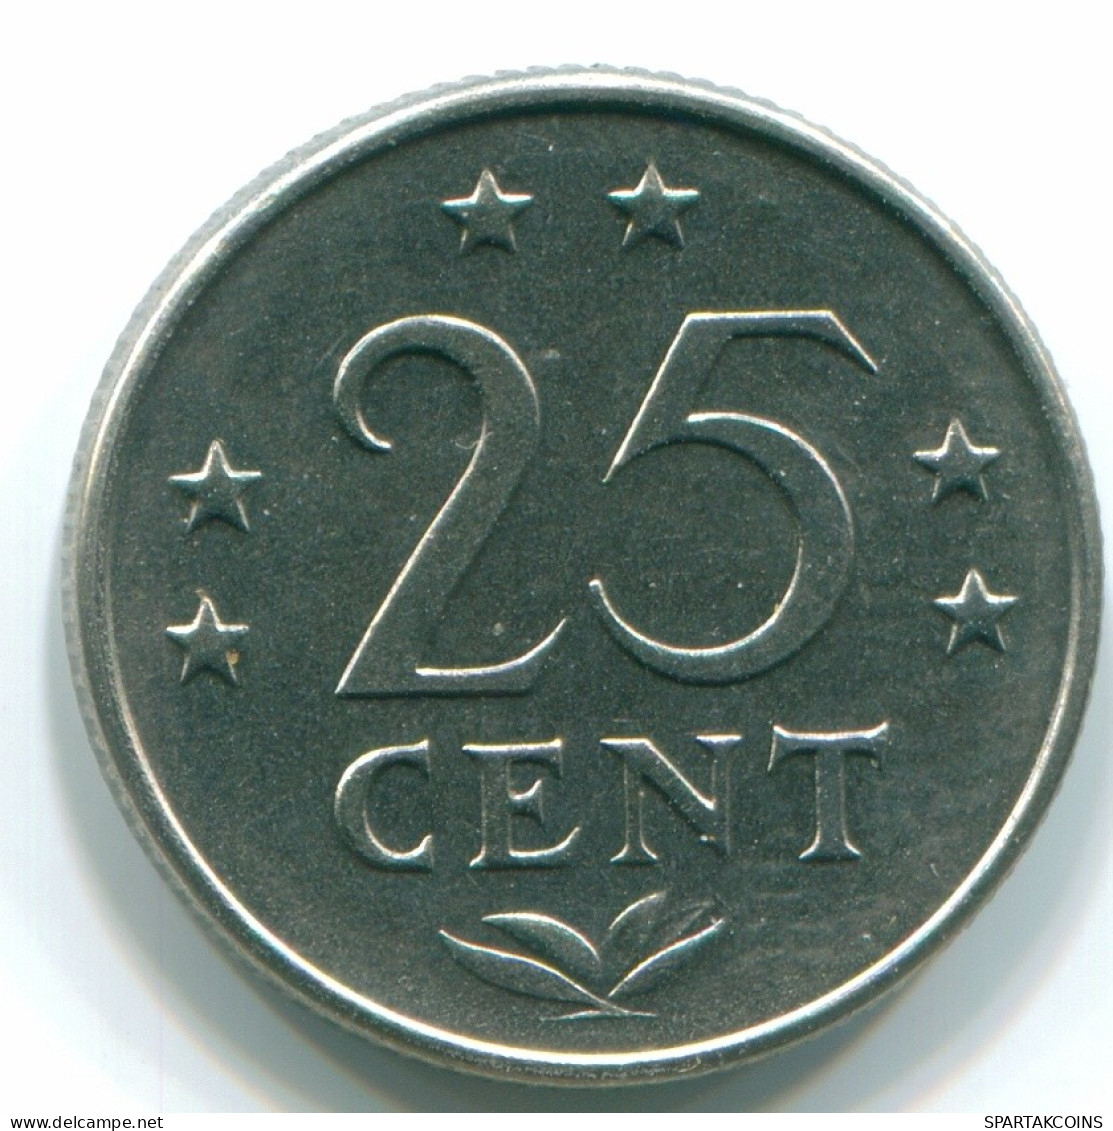 25 CENTS 1971 NIEDERLÄNDISCHE ANTILLEN Nickel Koloniale Münze #S11541.D.A - Antilles Néerlandaises